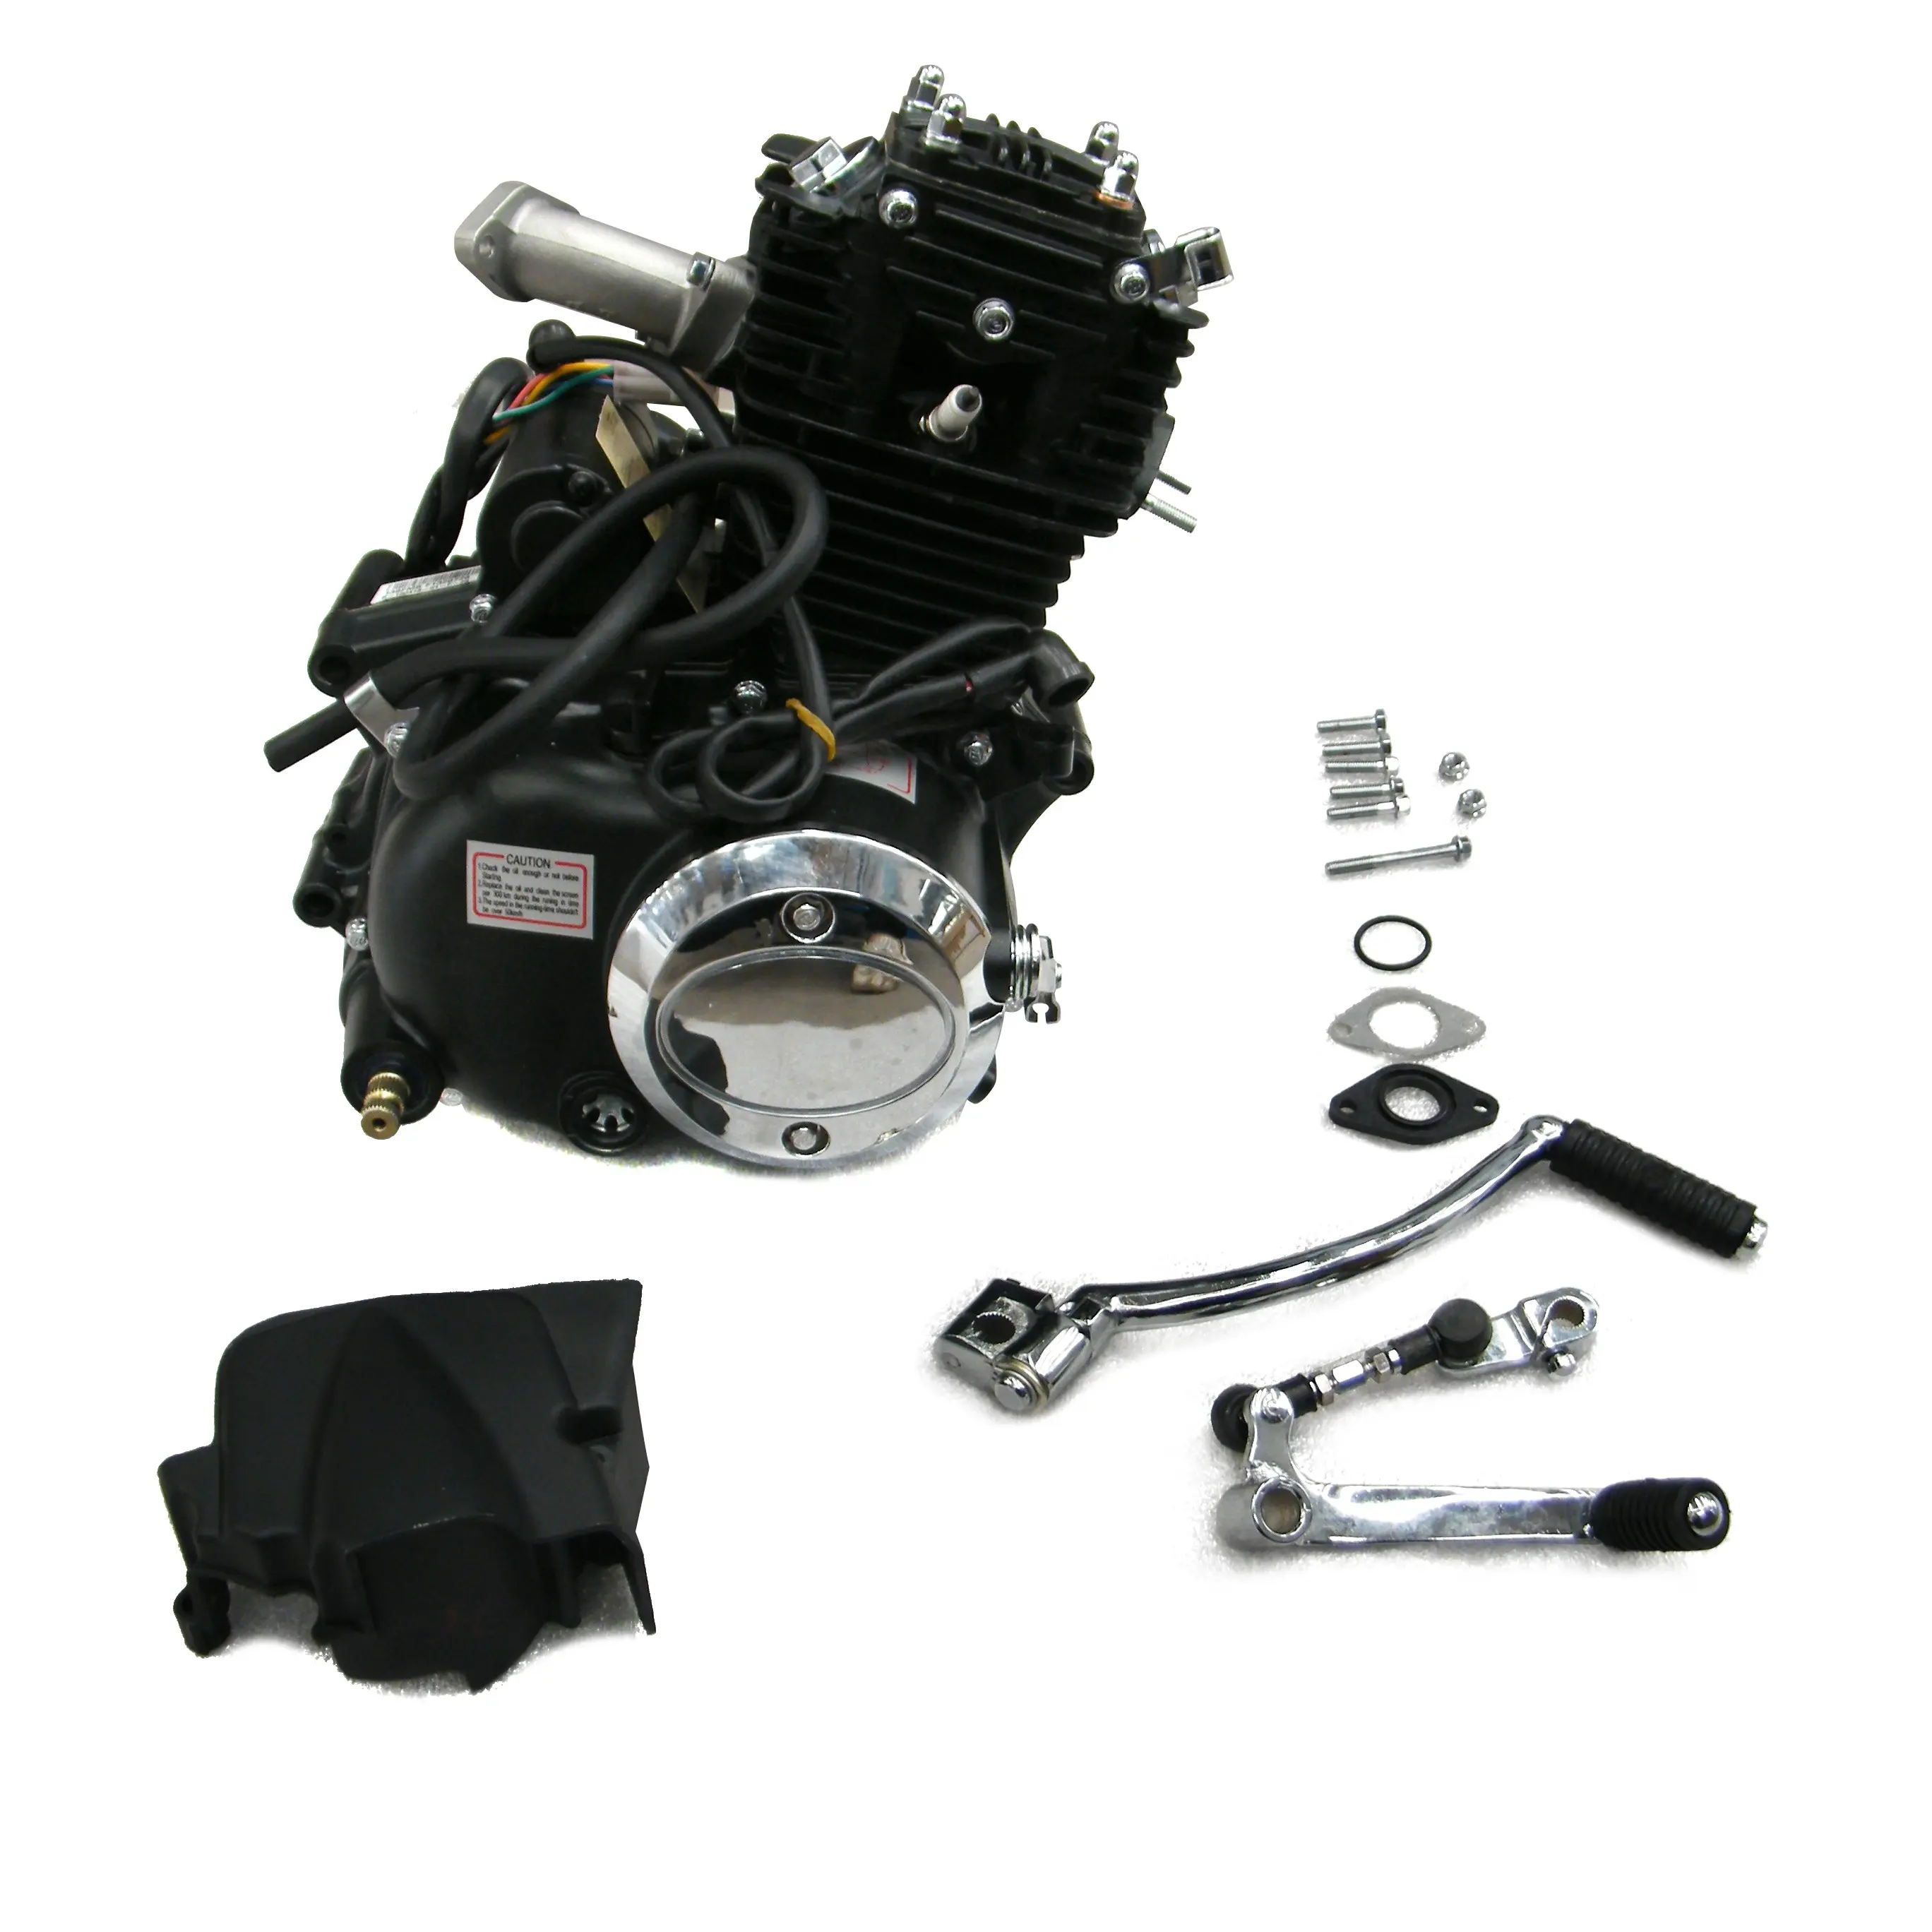 מקורי lifan מותג 50cc מנוע התחלה חשמלי עבור אופנוע לכלוך אופנוע